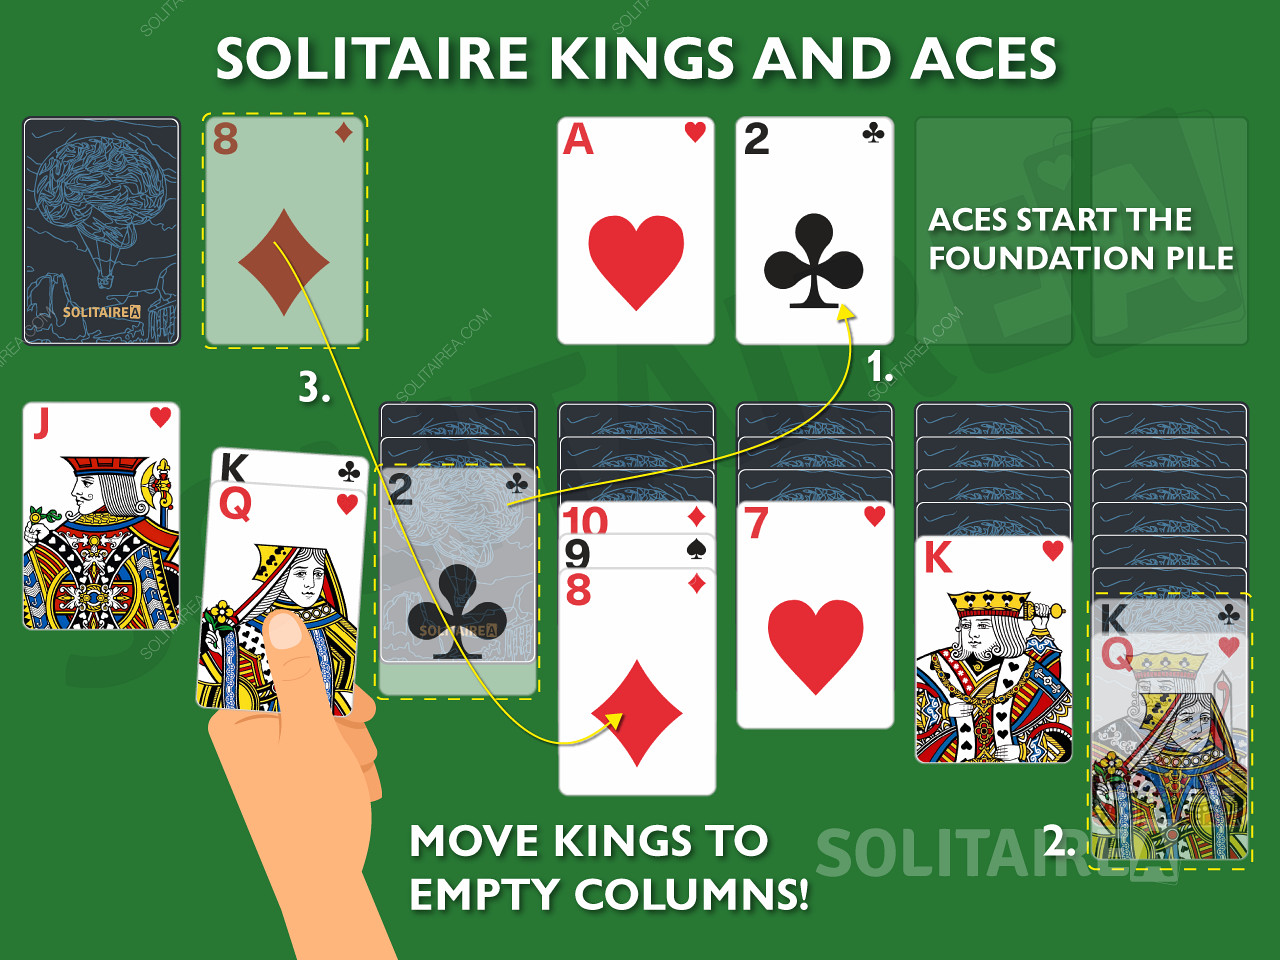 Kuninkaat ja ässät ovat tärkeitä kortteja pasianssissa, sillä ne saavat tehdä ainutlaatuisia liikkeitä.